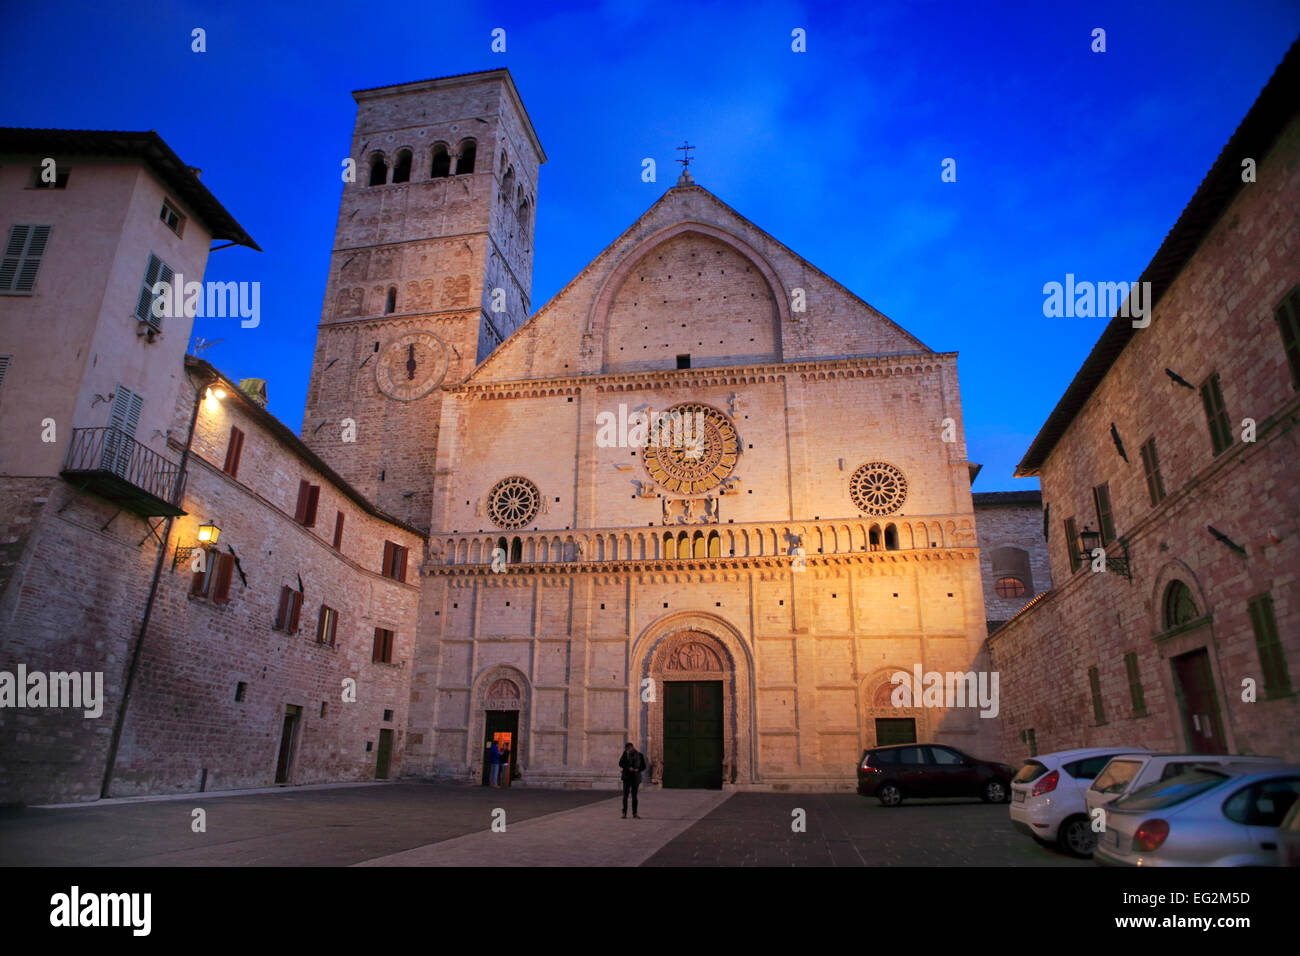 Basilica of San Francesco d'Assisi (Papal Basilica of St. Francis of Assisi), Assisi, Umbria, Italy Stock Photo